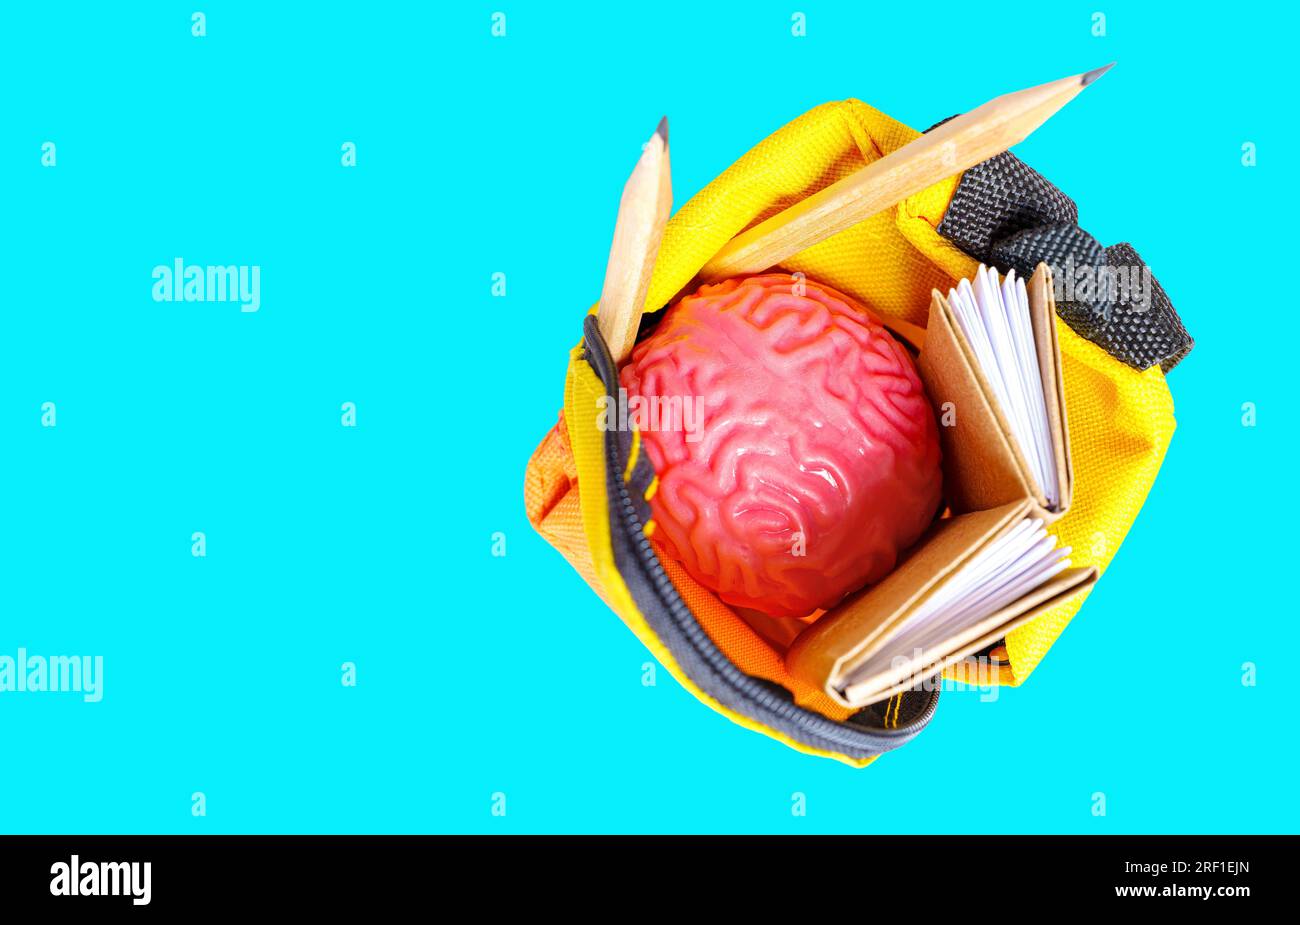 Modèle de cerveau humain rose, petits livres et crayons placés dans un sac à dos vibrant miniature isolé sur fond bleu. Conc. Lié à l'apprentissage et à l'éducation Banque D'Images